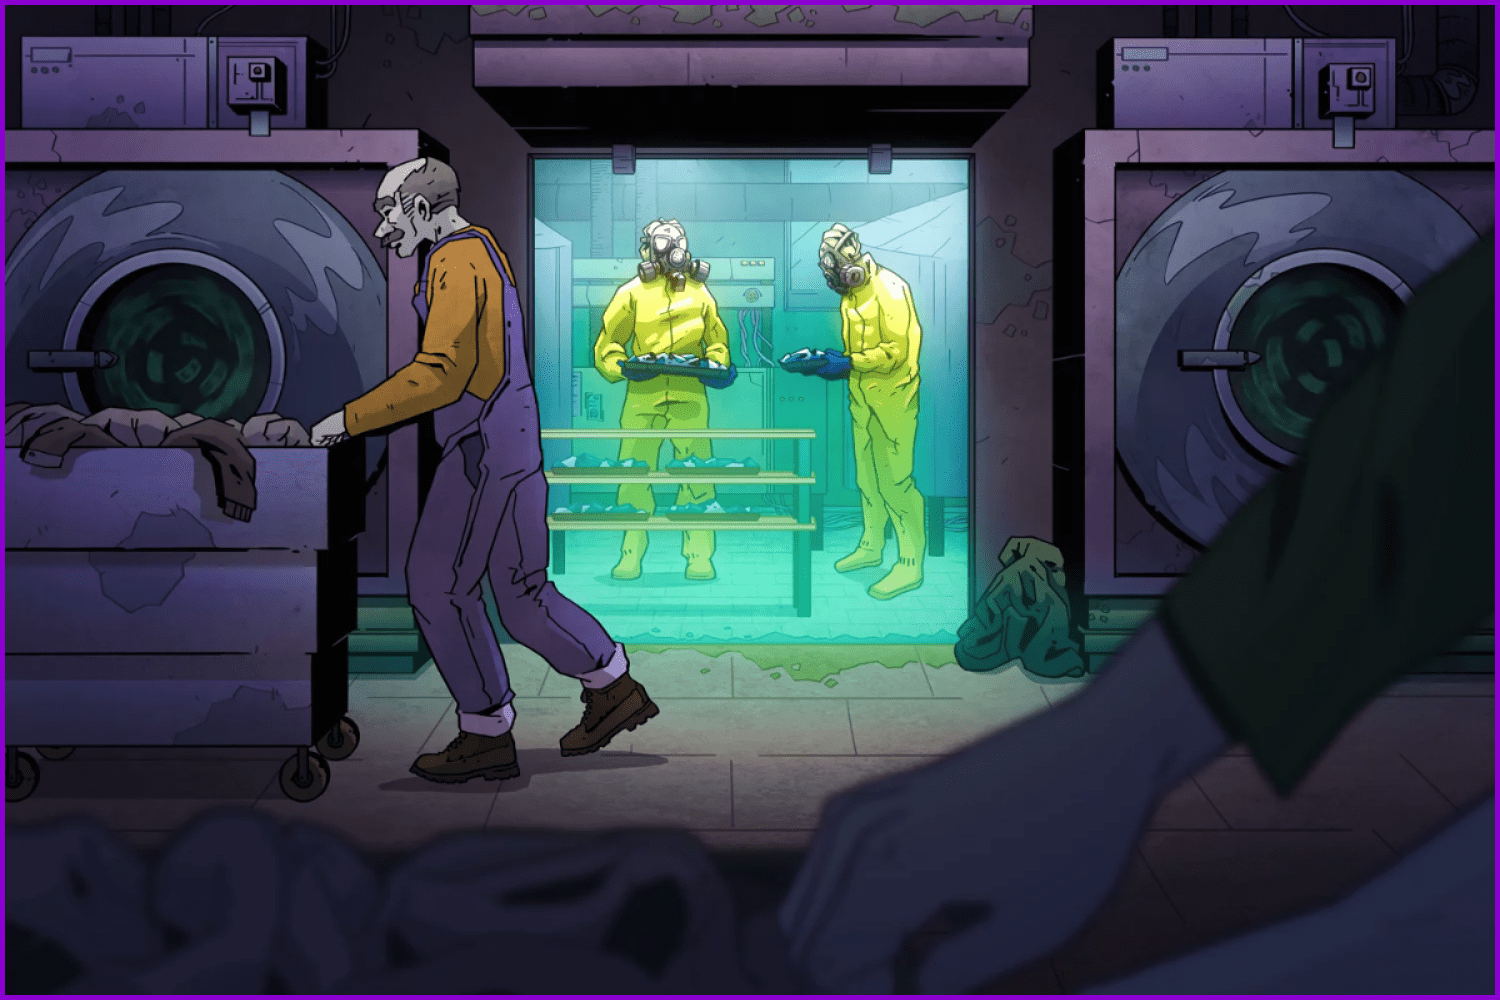 Workers in lockedroom in violet tones.